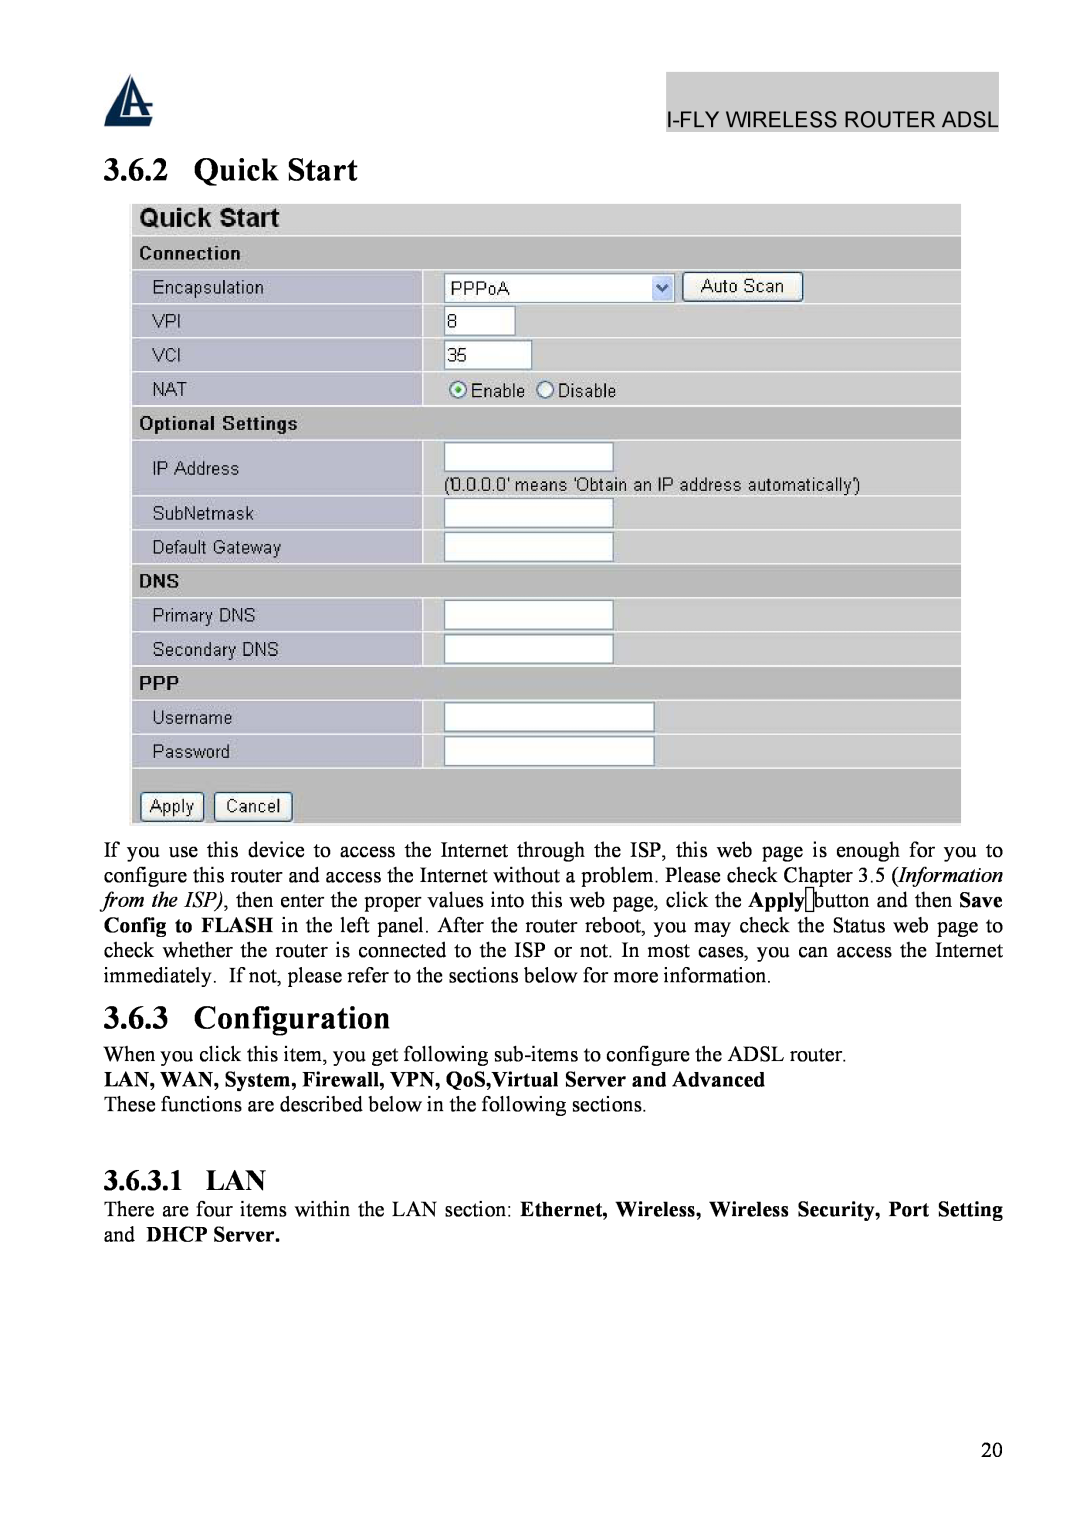 Atlantis Land A02-WRA4-54G manual Quick Start, Configuration, 3.6.3.1 LAN 